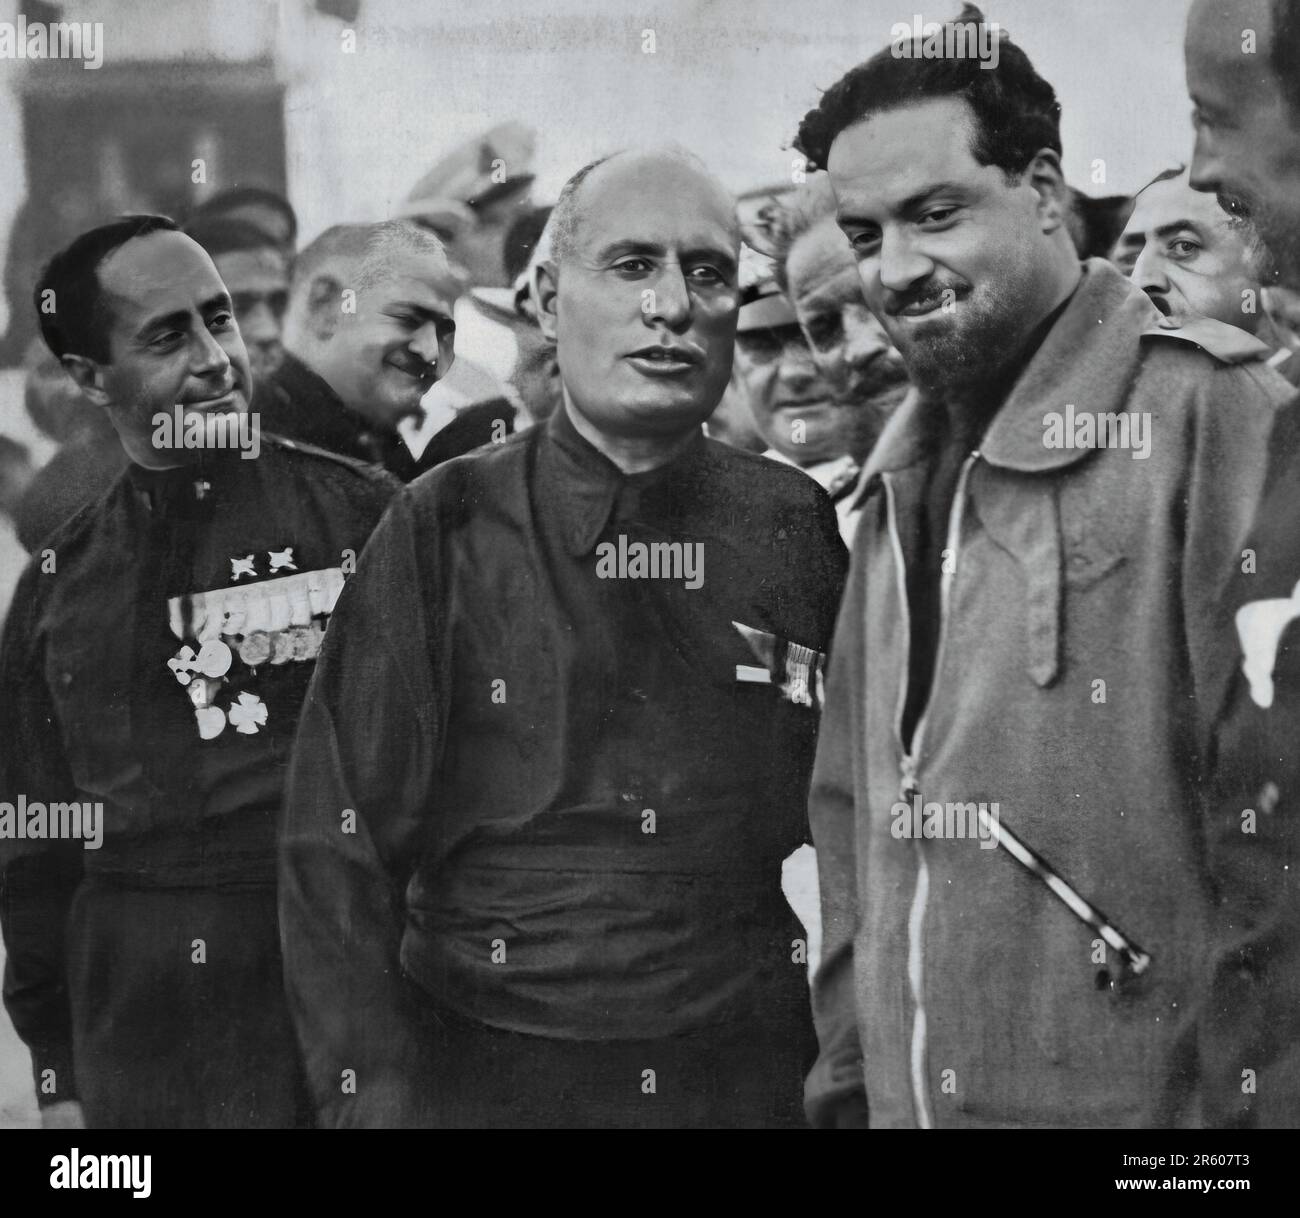 Italo Balbo e Benito Mussolini, protagonisti della tragica dittatura fascista italiana degli inizi del Novecento Foto Stock